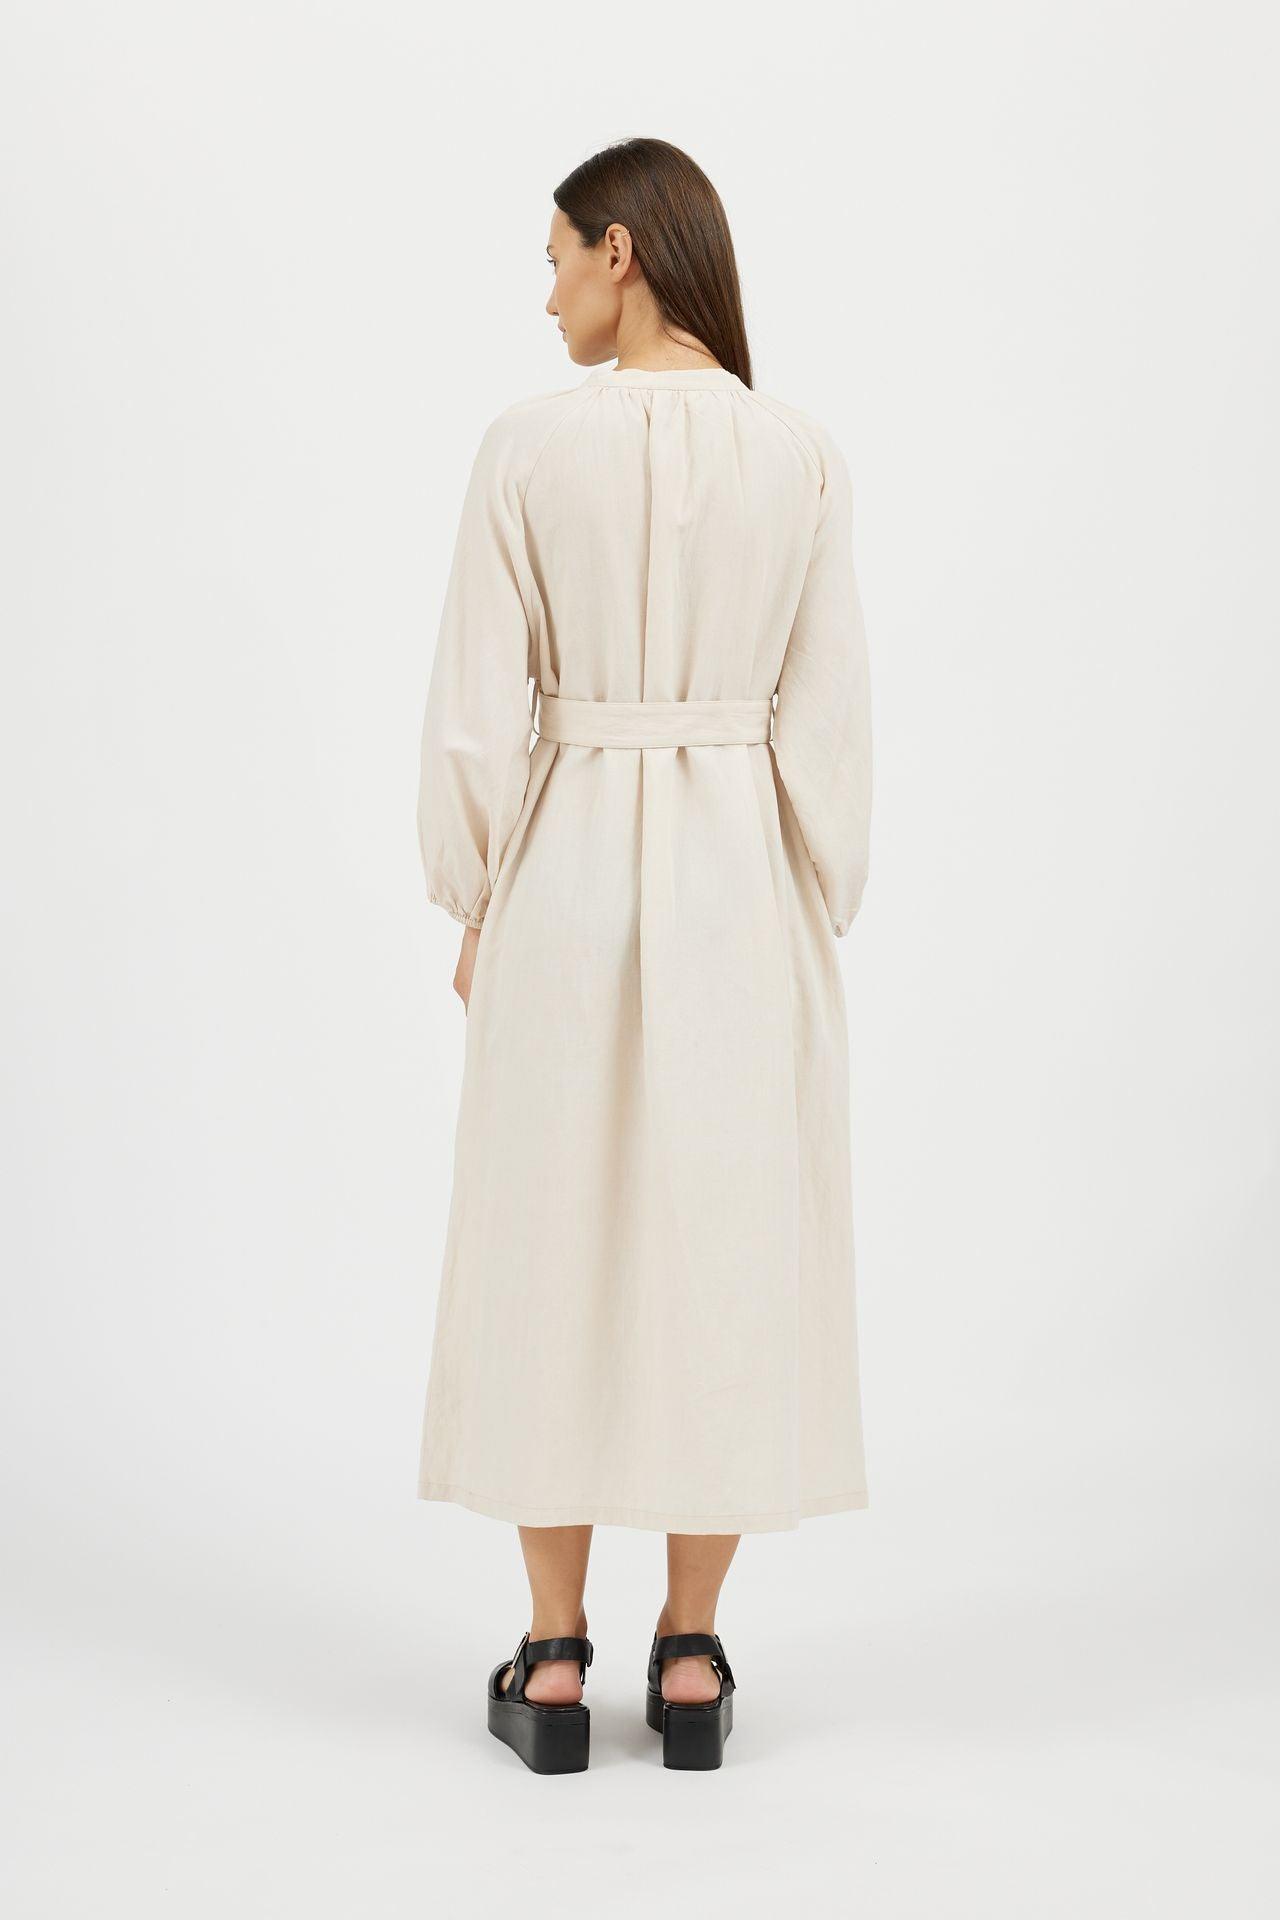 Women's Puff Sleeve Linen Long Dress - NOT LABELED